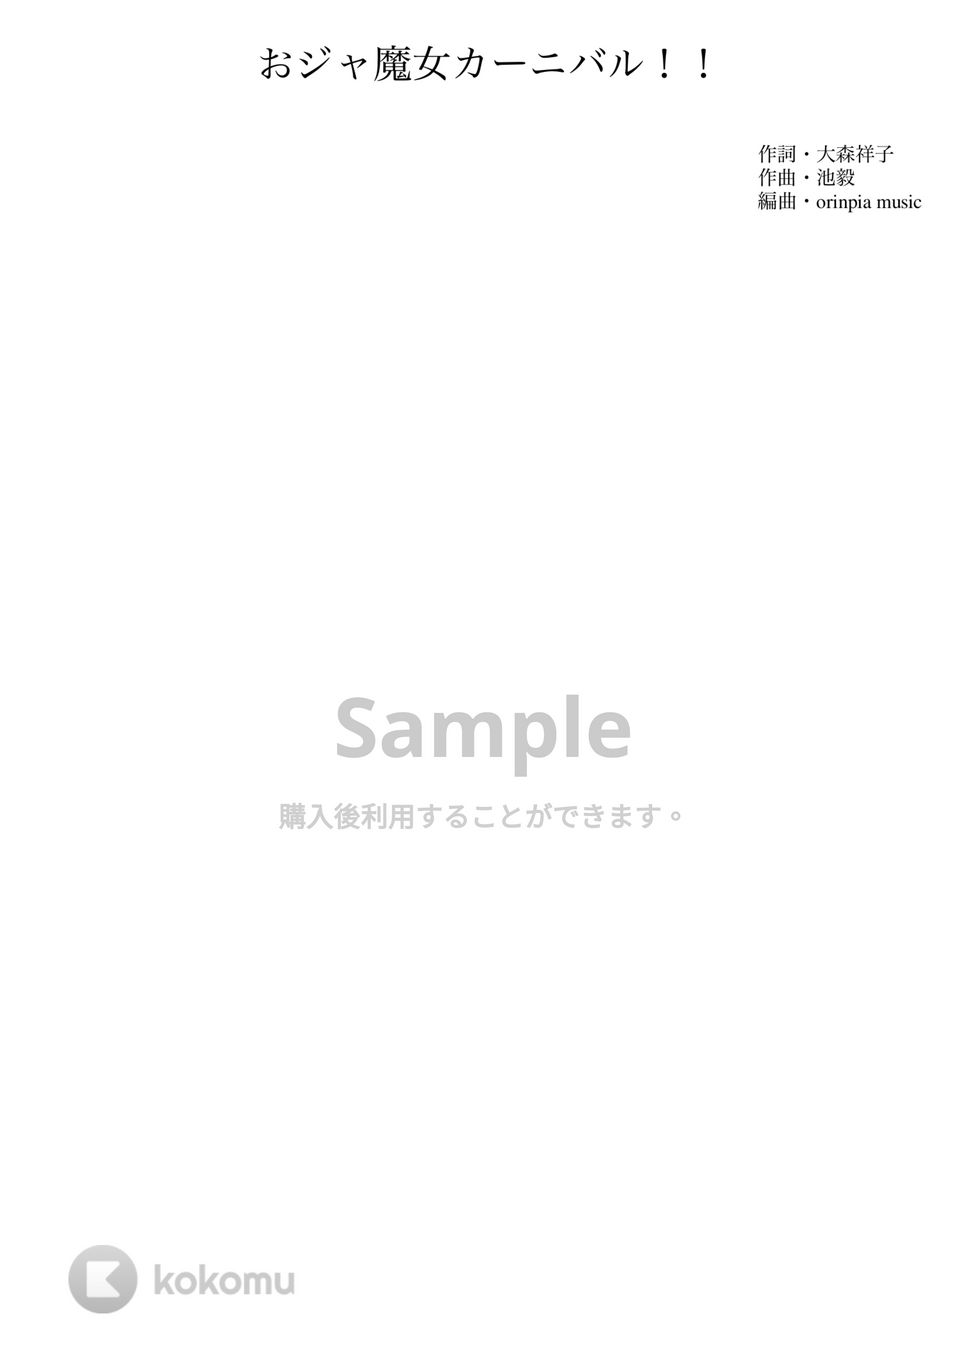 おジャ魔女どれみ - おジャ魔女カーニバル!! (吹奏楽 / 小人数 / スコア) by orinpia music